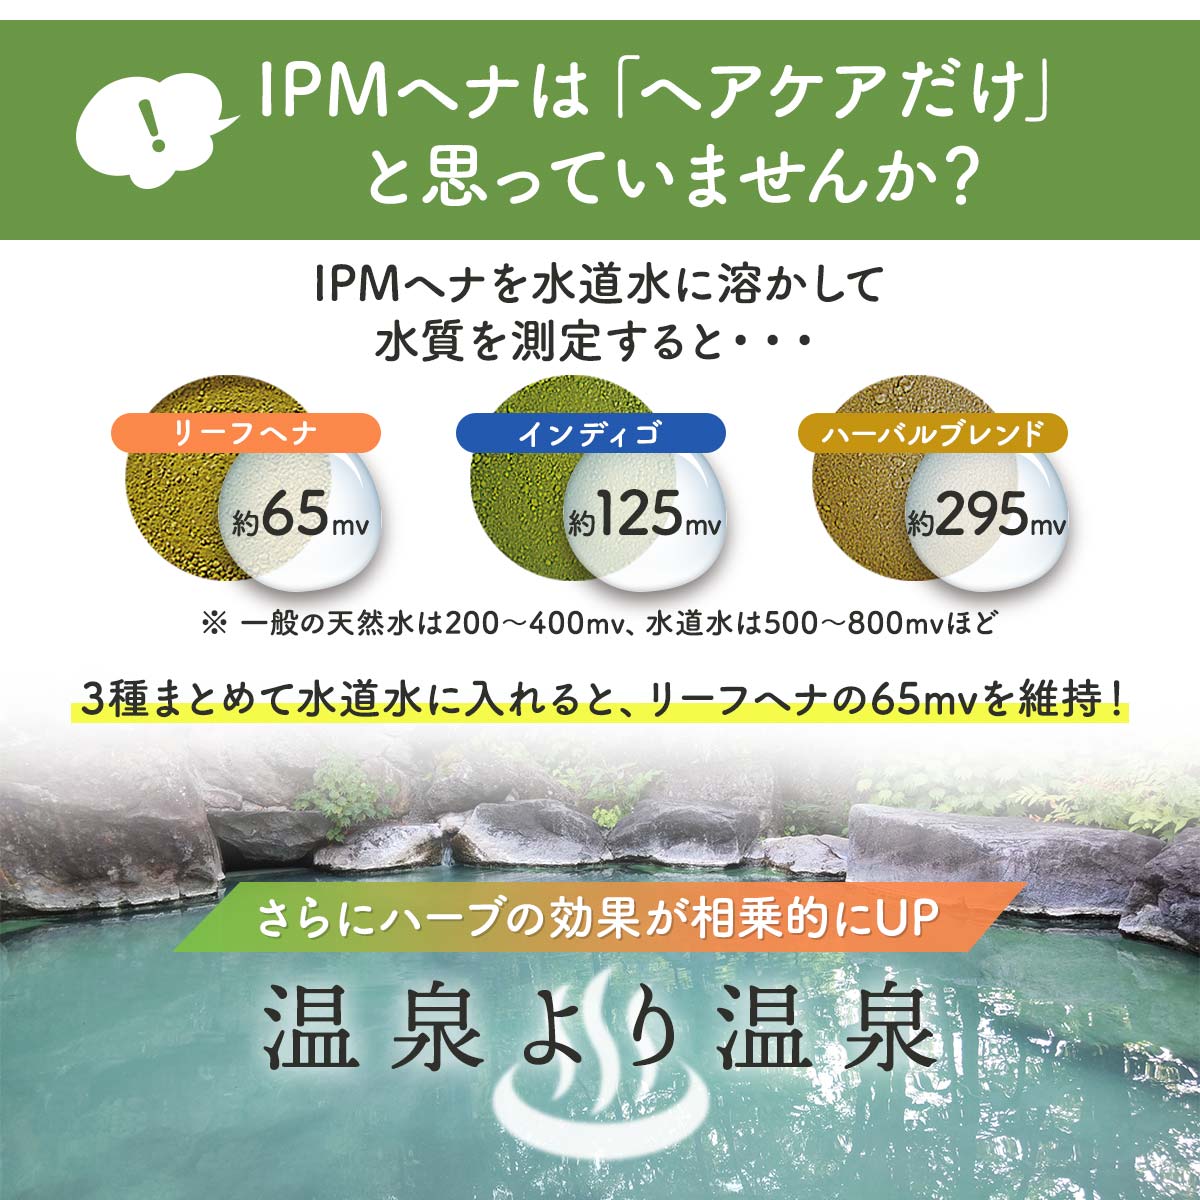 ギフト/プレゼント/ご褒美]IPM ヘナ インディゴ 100g エコ洗剤2個プレゼント中 カラーリング